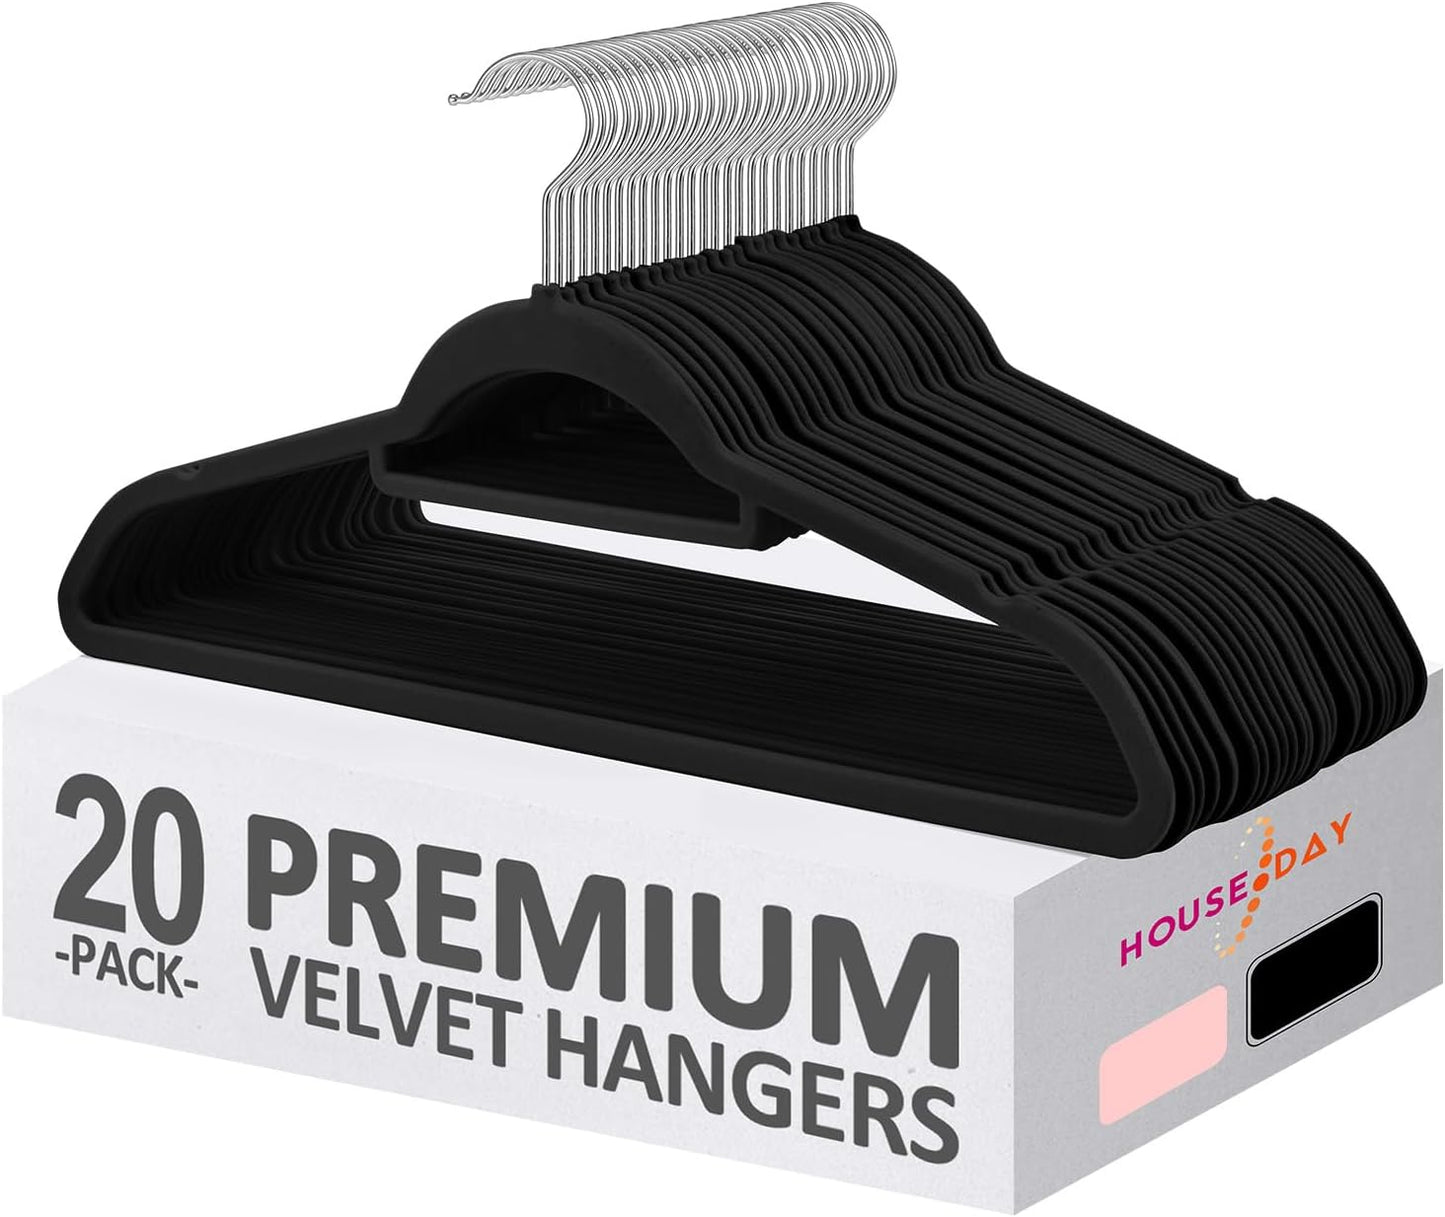 HOUSE DAY Black Velvet Hangers with Tie Bar 20 Pack